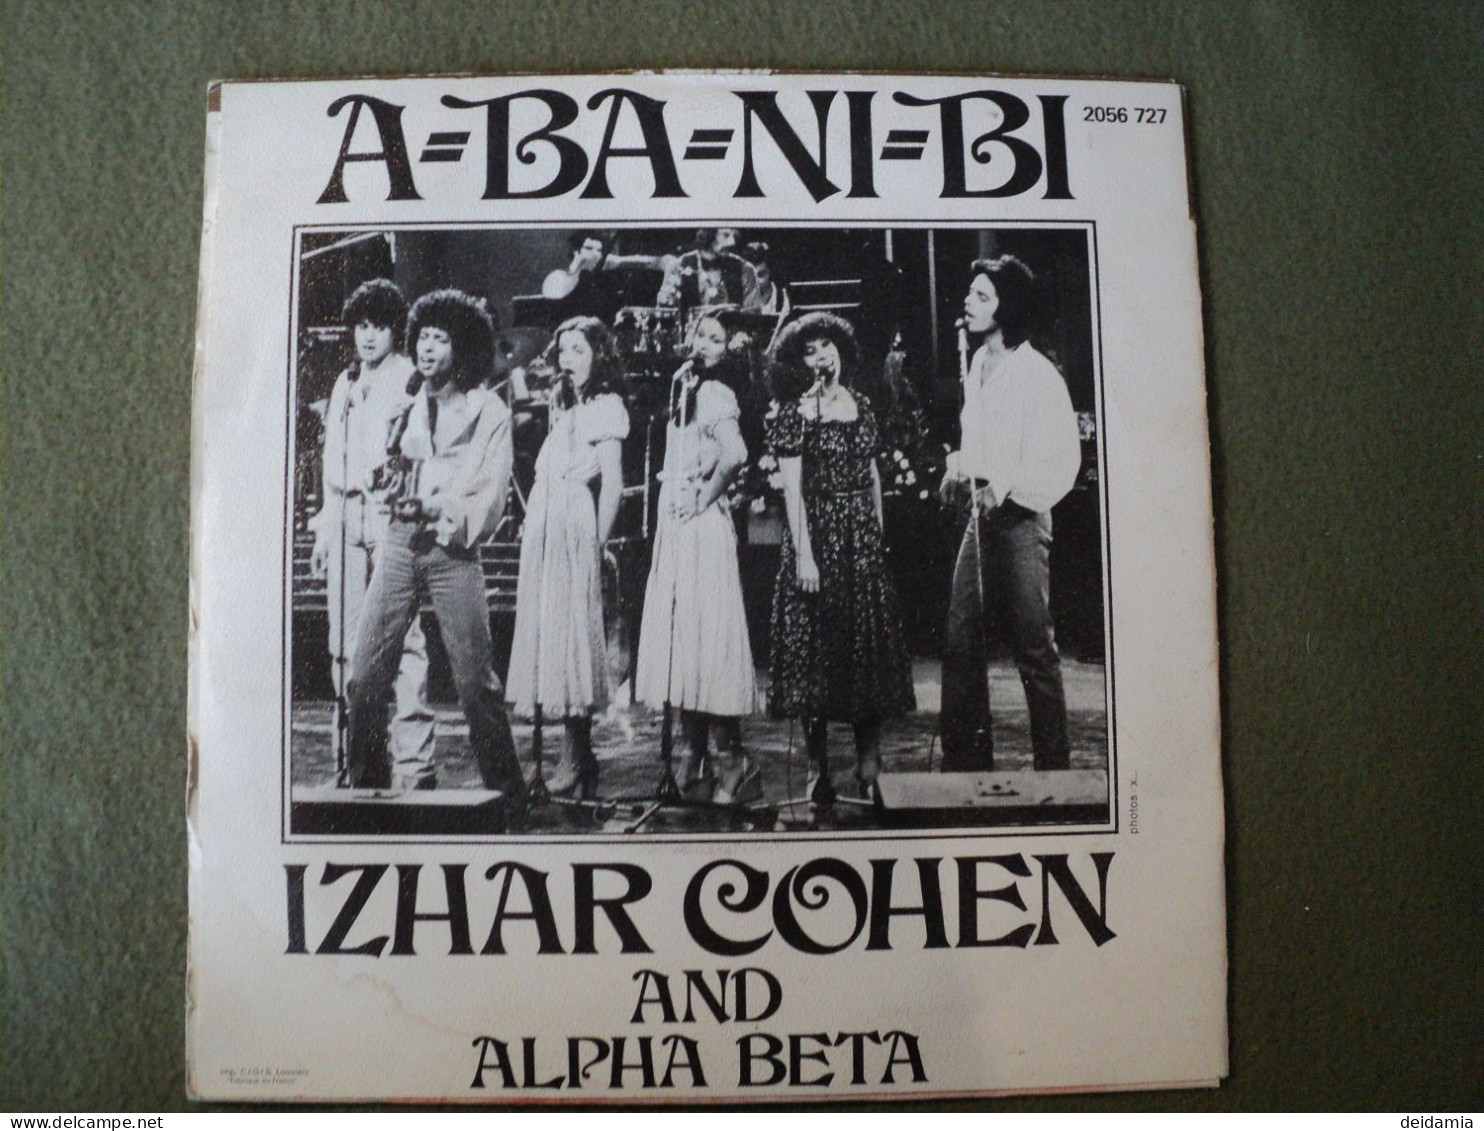 45 TOURS IZHAR COHEN AND ALPHA BETA. 1978. POLYDOR 2056 727 A BA NI BI / ILLUSIONS. SHLOMO ZACH / URI COHEN. - Disco & Pop